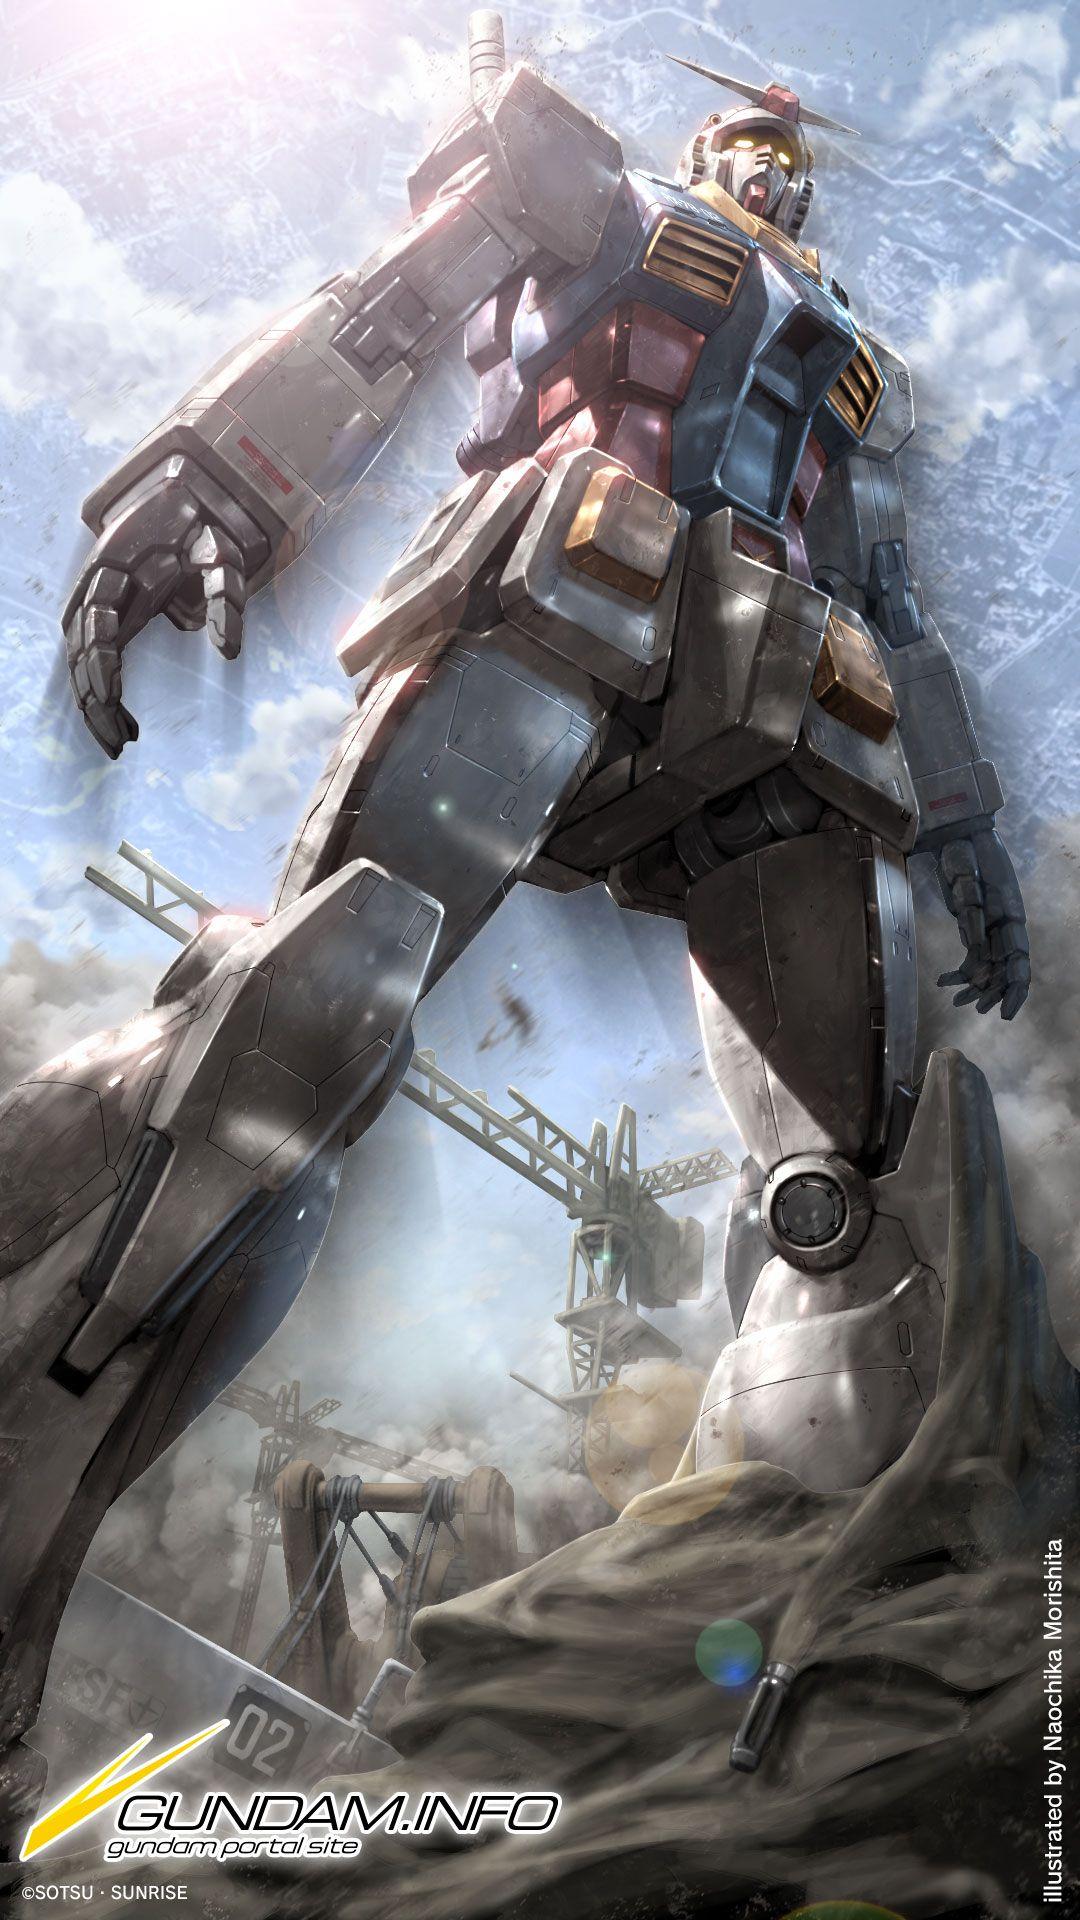 Gundam Wallpapers - Top Free Gundam Backgrounds - WallpaperAccess